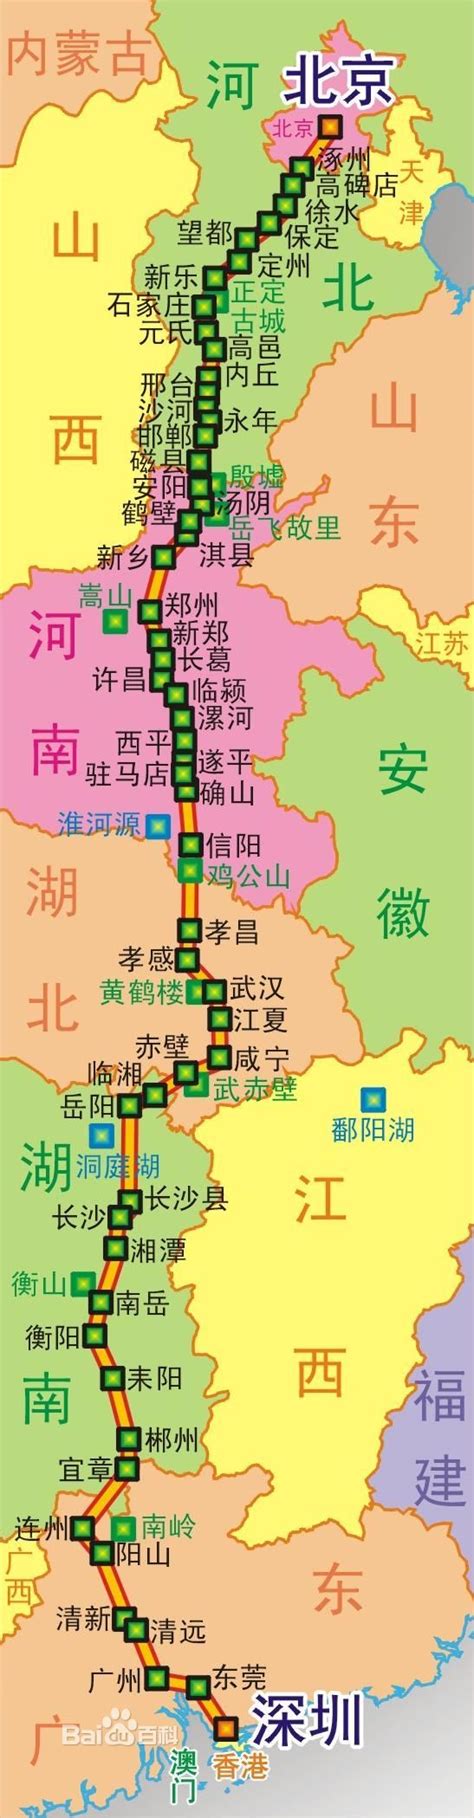 青藏线交通指南-青藏线交通路线-西行川藏